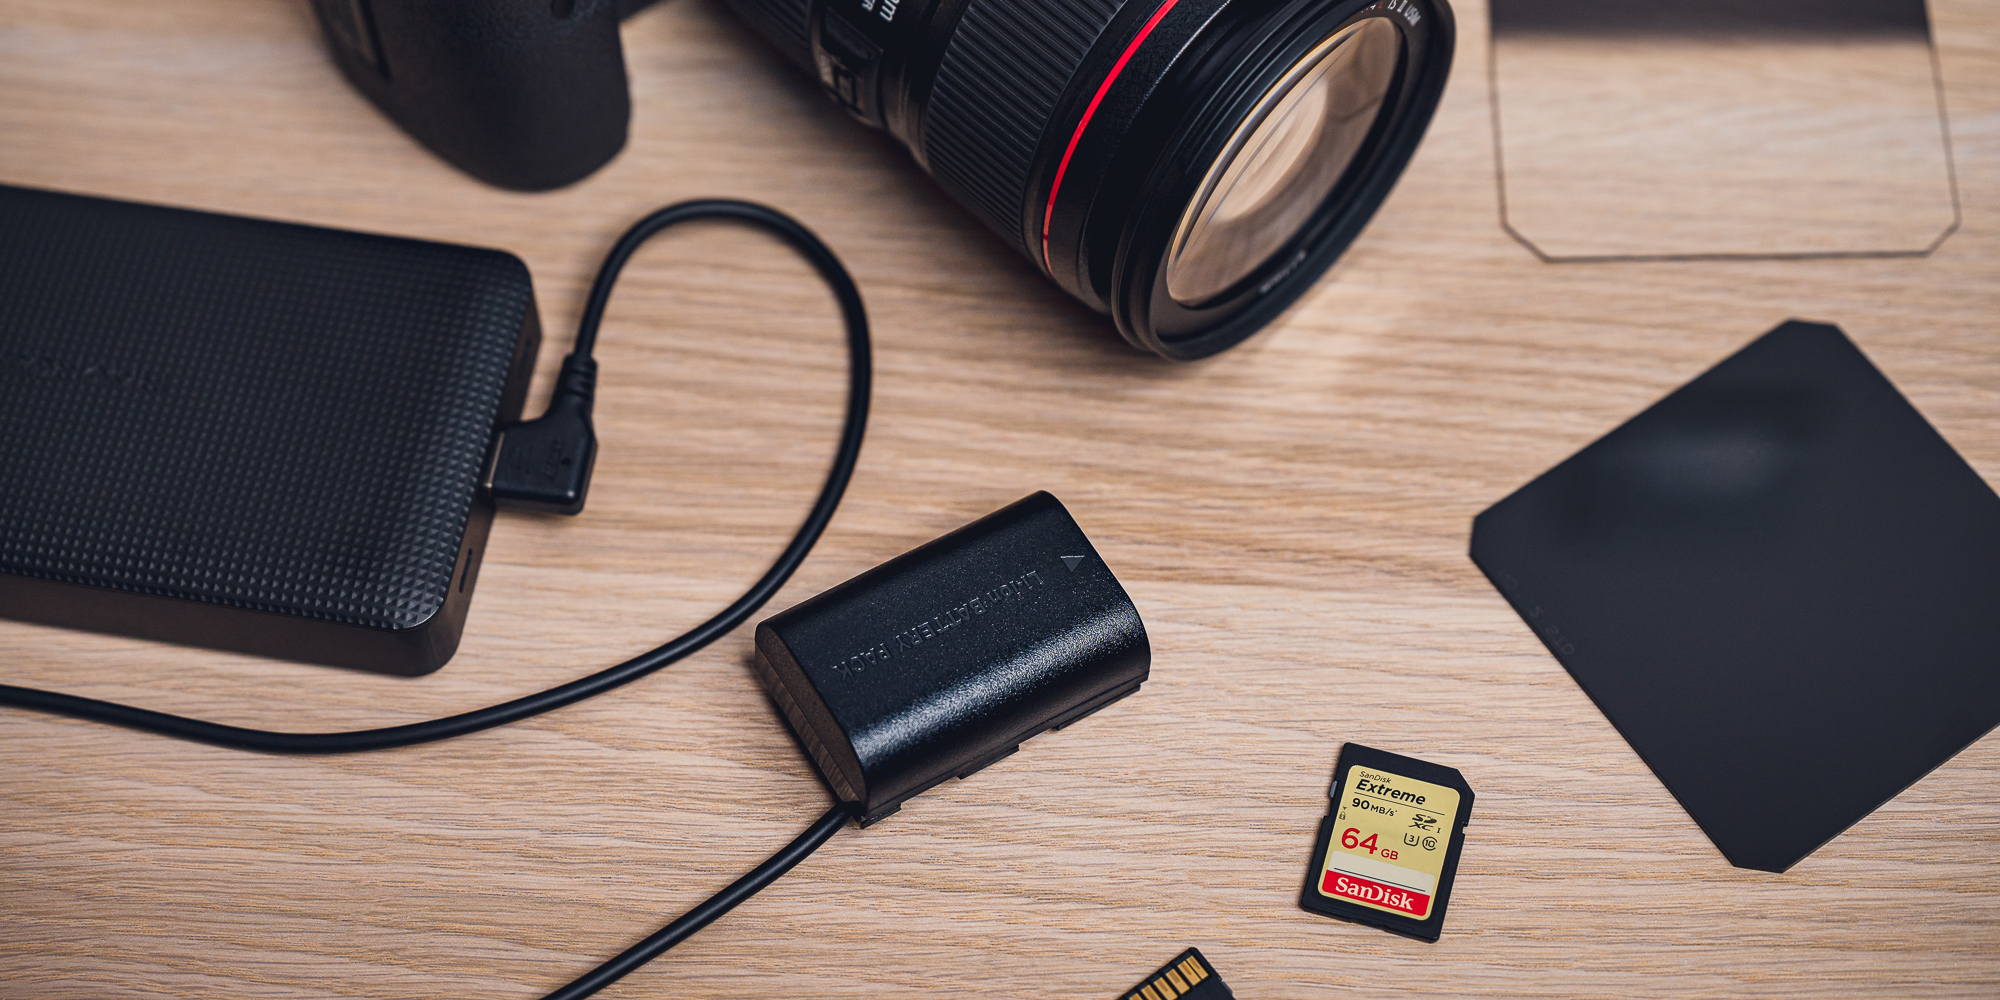 Adapter zasilania Zitay USB do LP-E6 - USB, które zawsze pasuje!